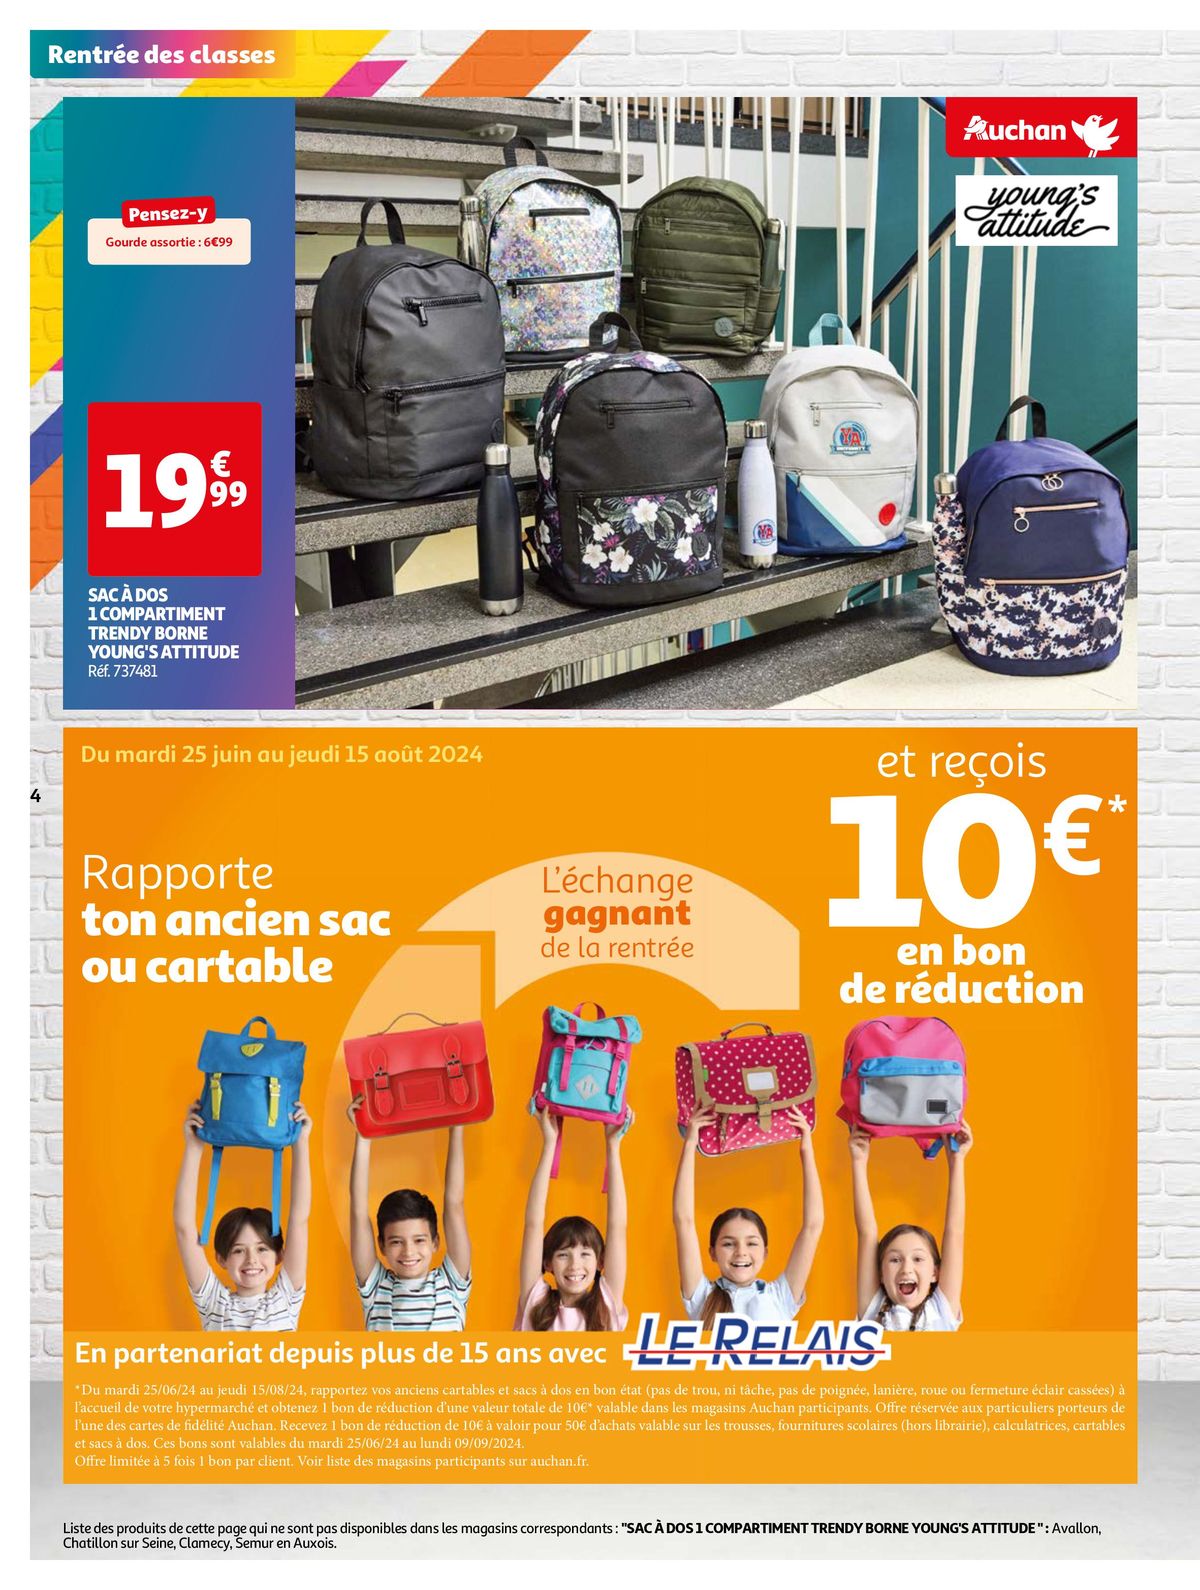 Catalogue La rentrée à petits prix !, page 00004